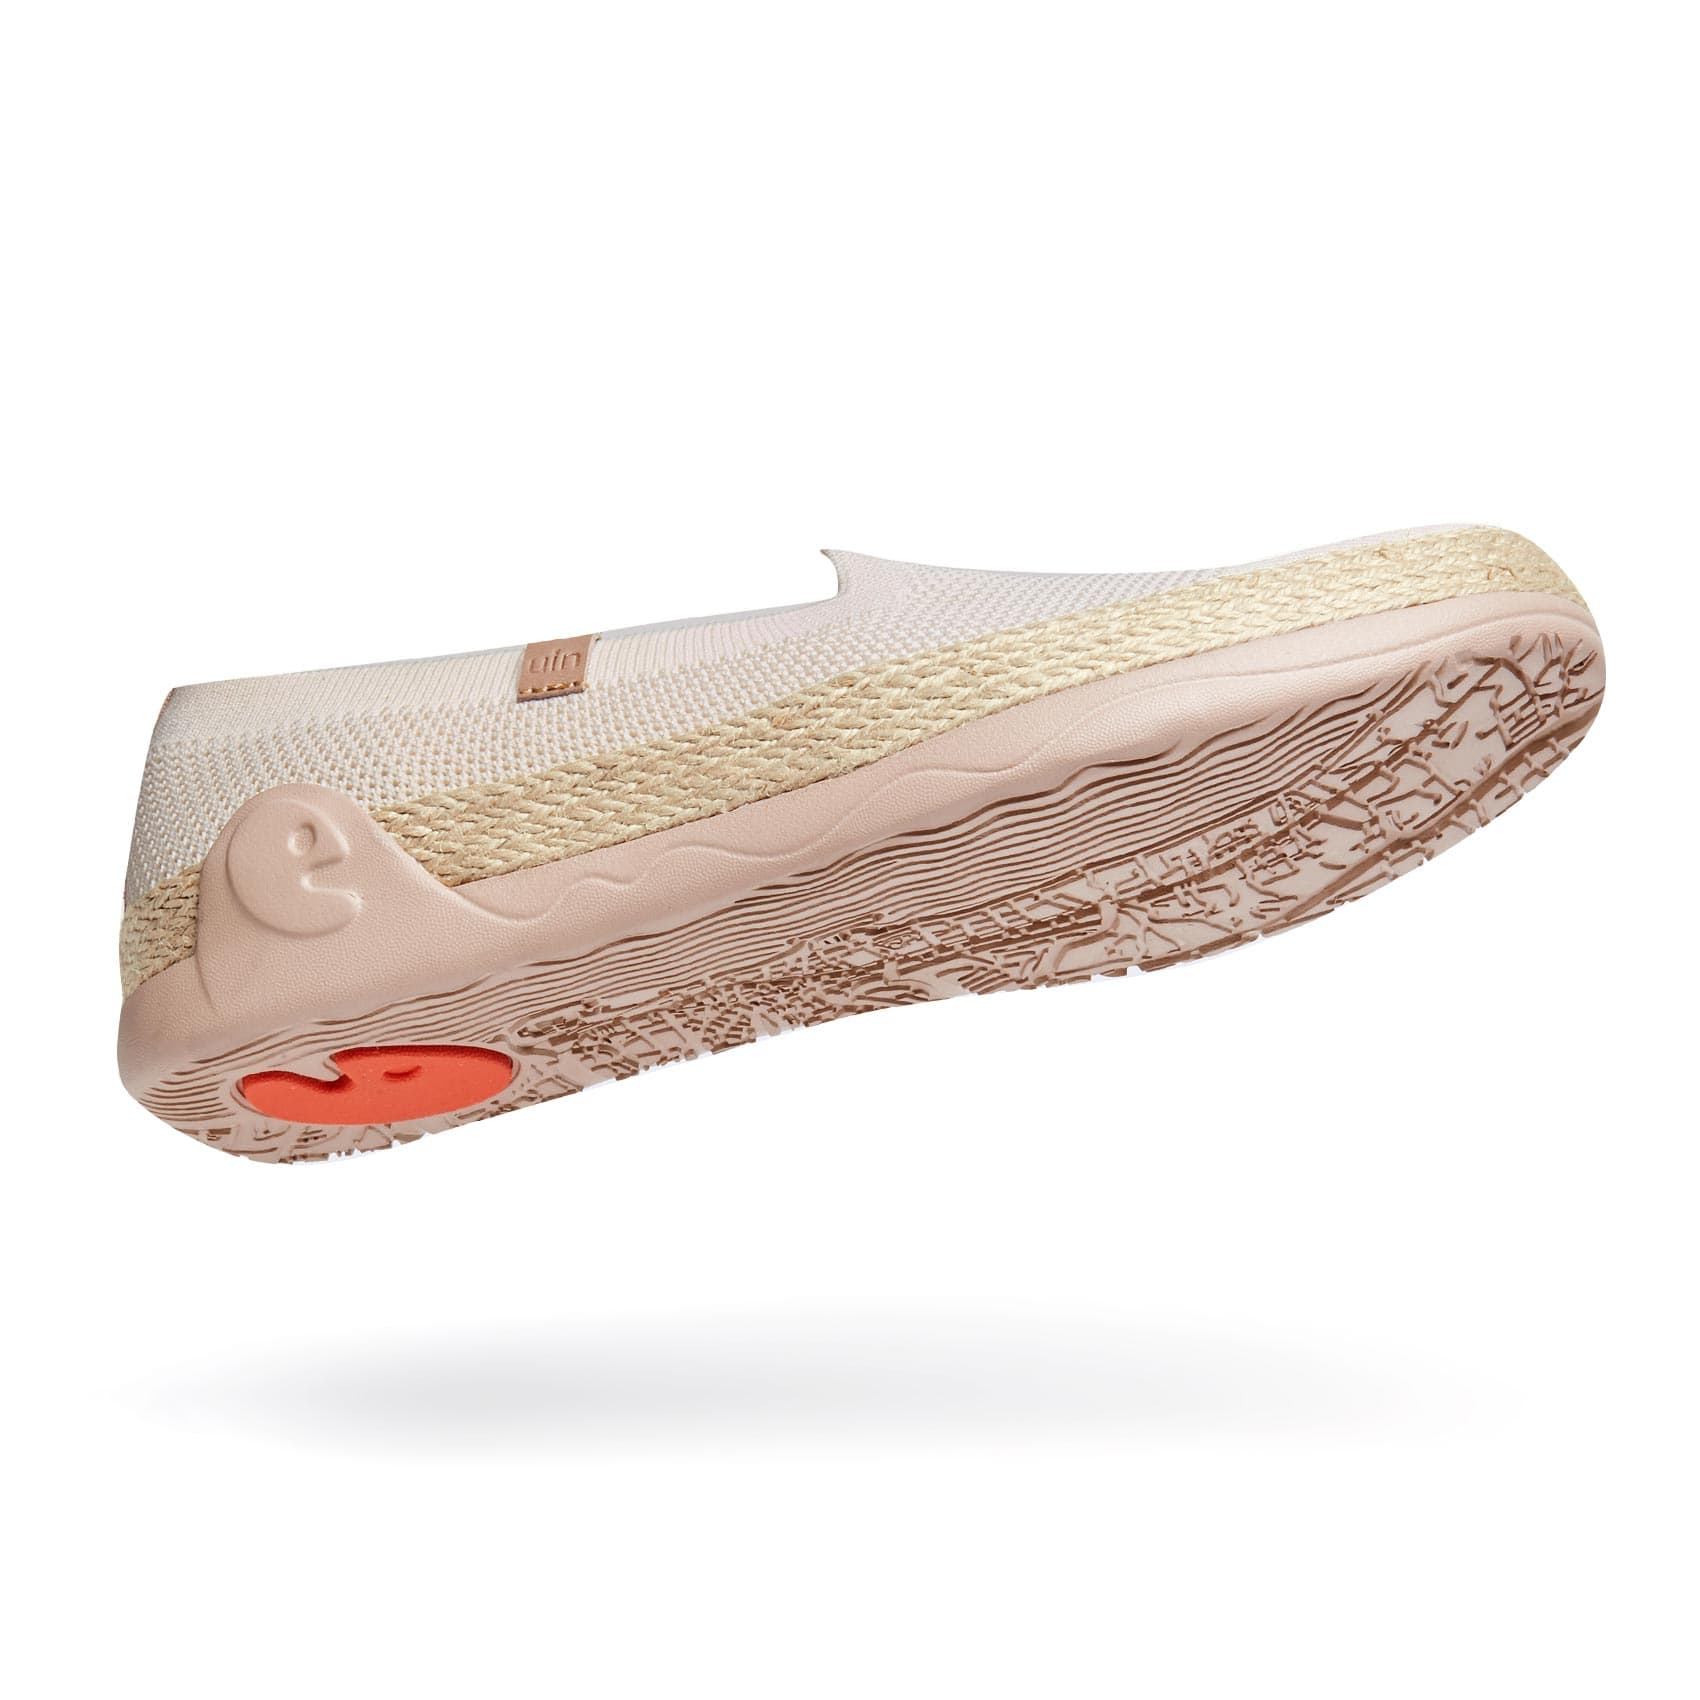 UIN Footwear Women Marbella II Creamy-white Canvas loafers